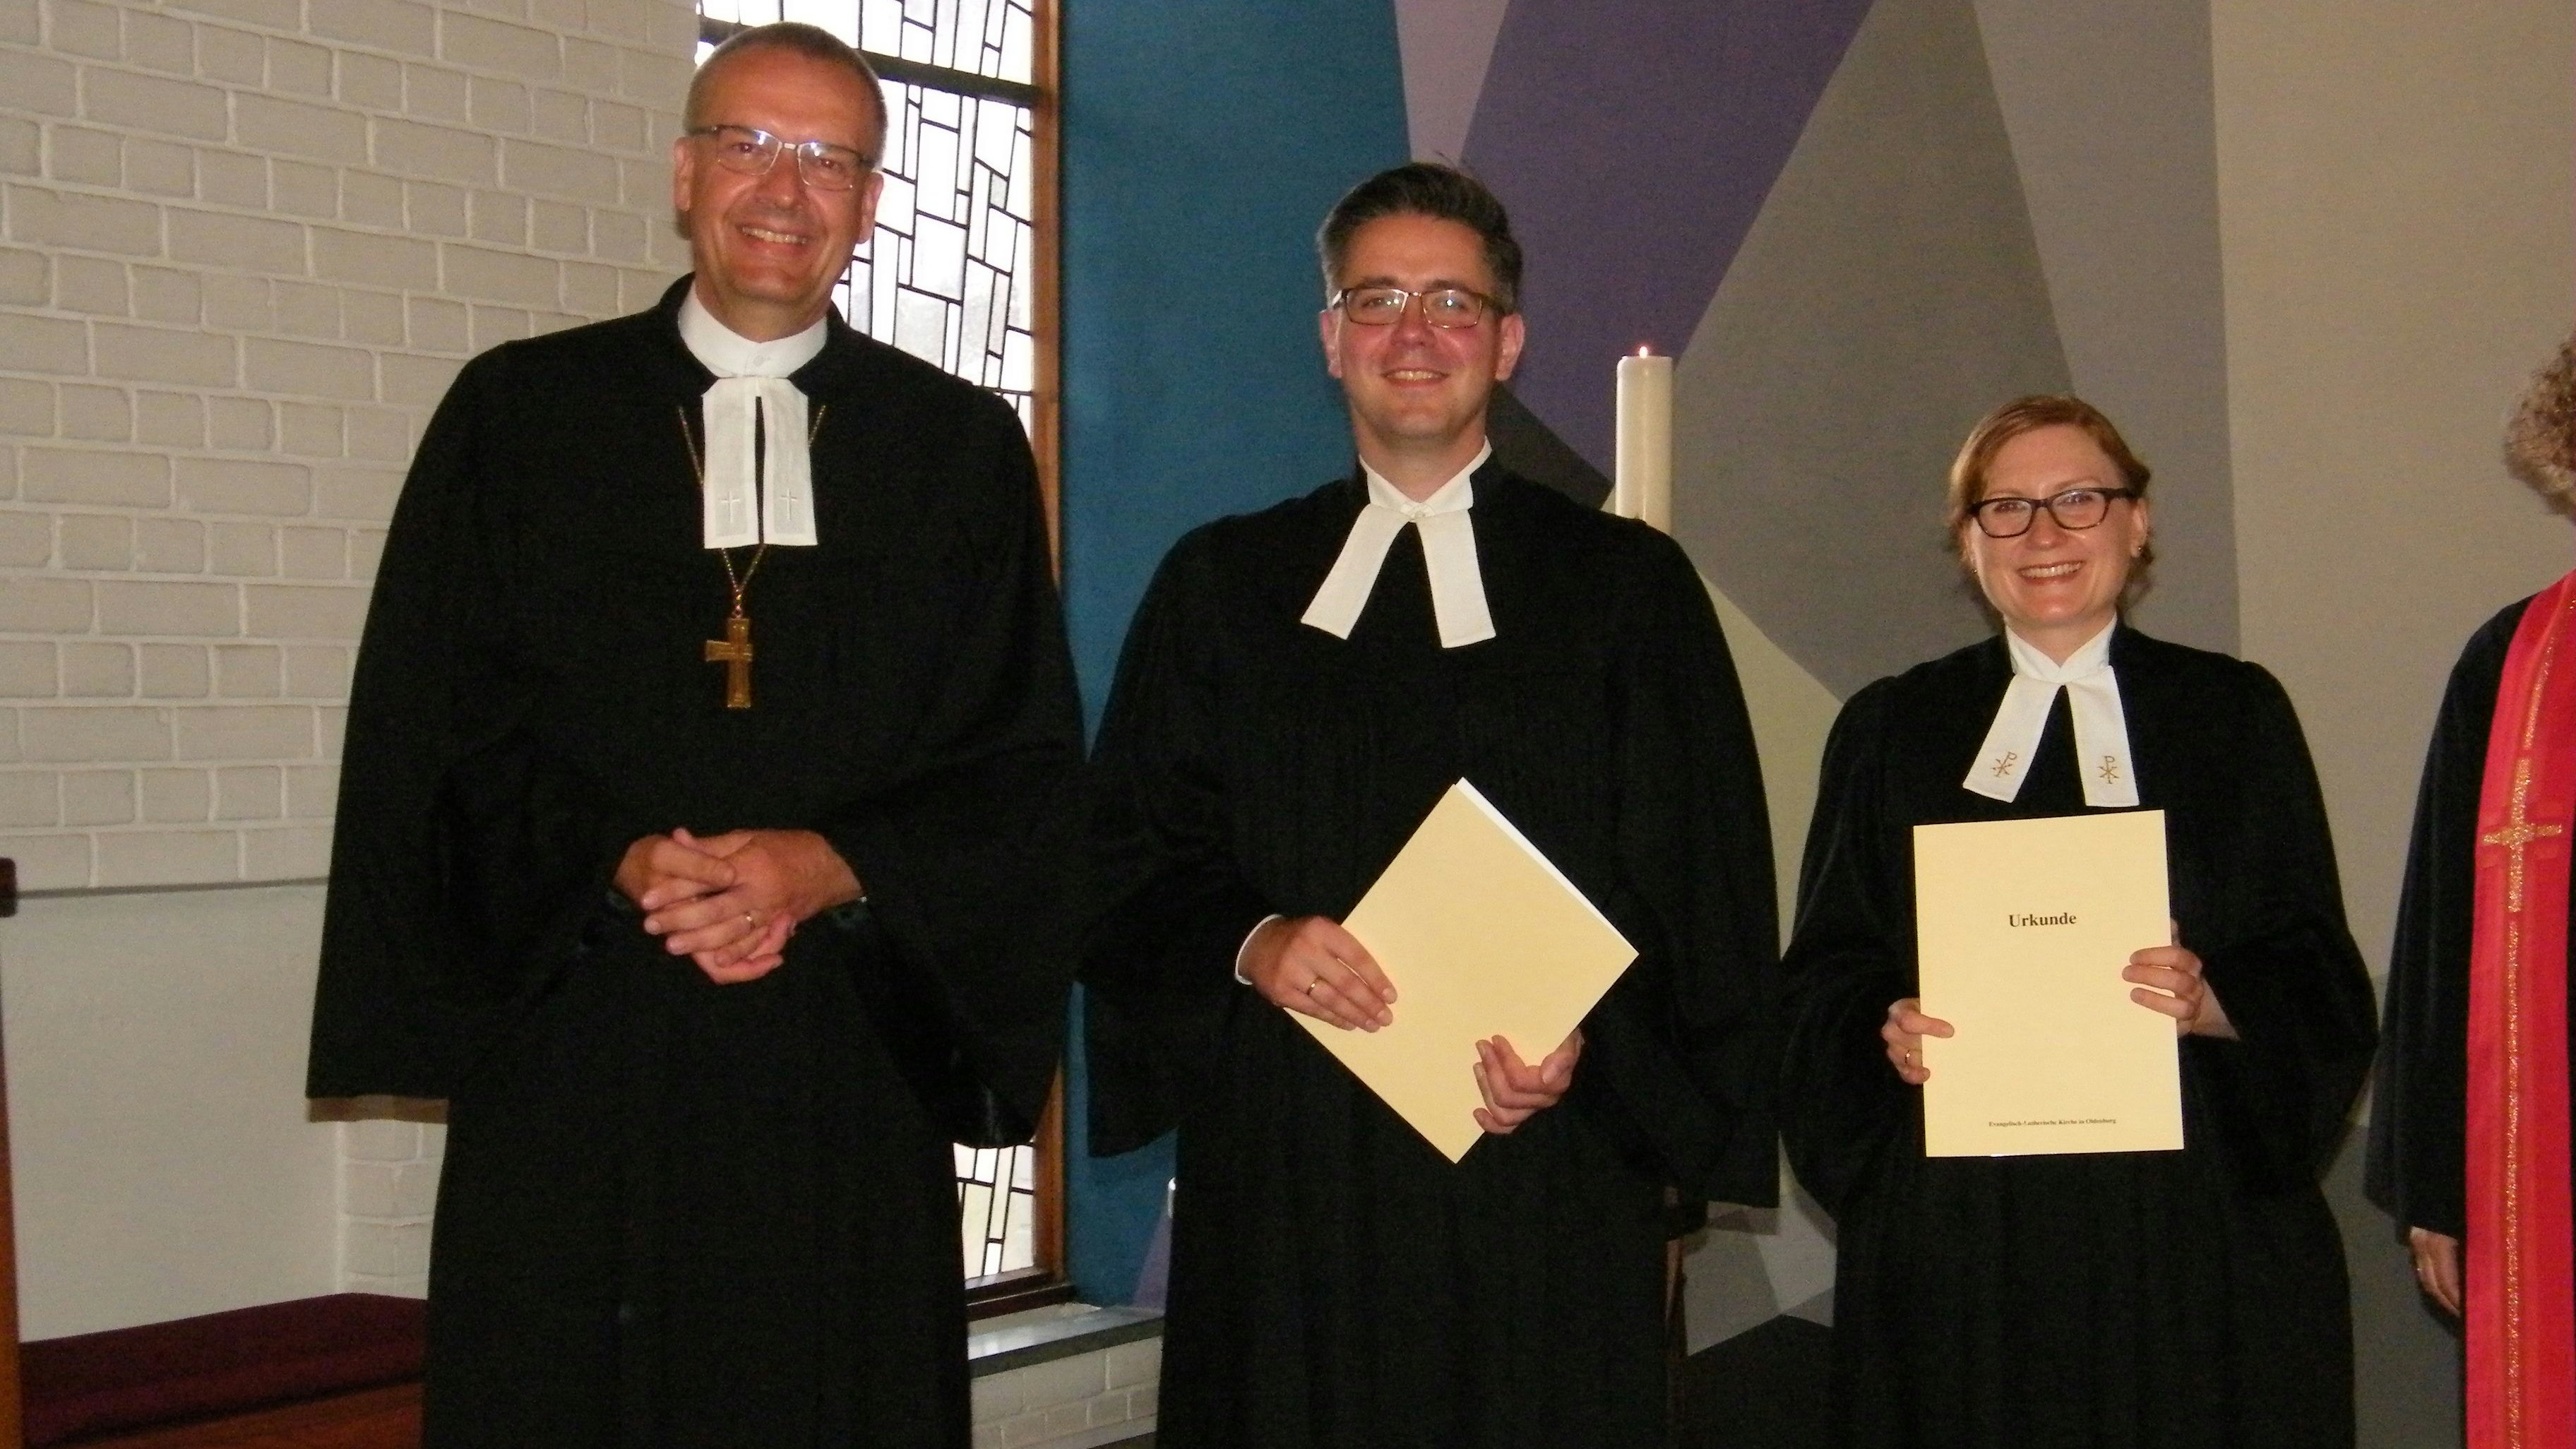 Die Urkunden sind übergeben: Bischof Thomas Adomeit (links) führte Christoph und Pia Kristin Schäfer in das Amt ein. Foto: Gerwanski